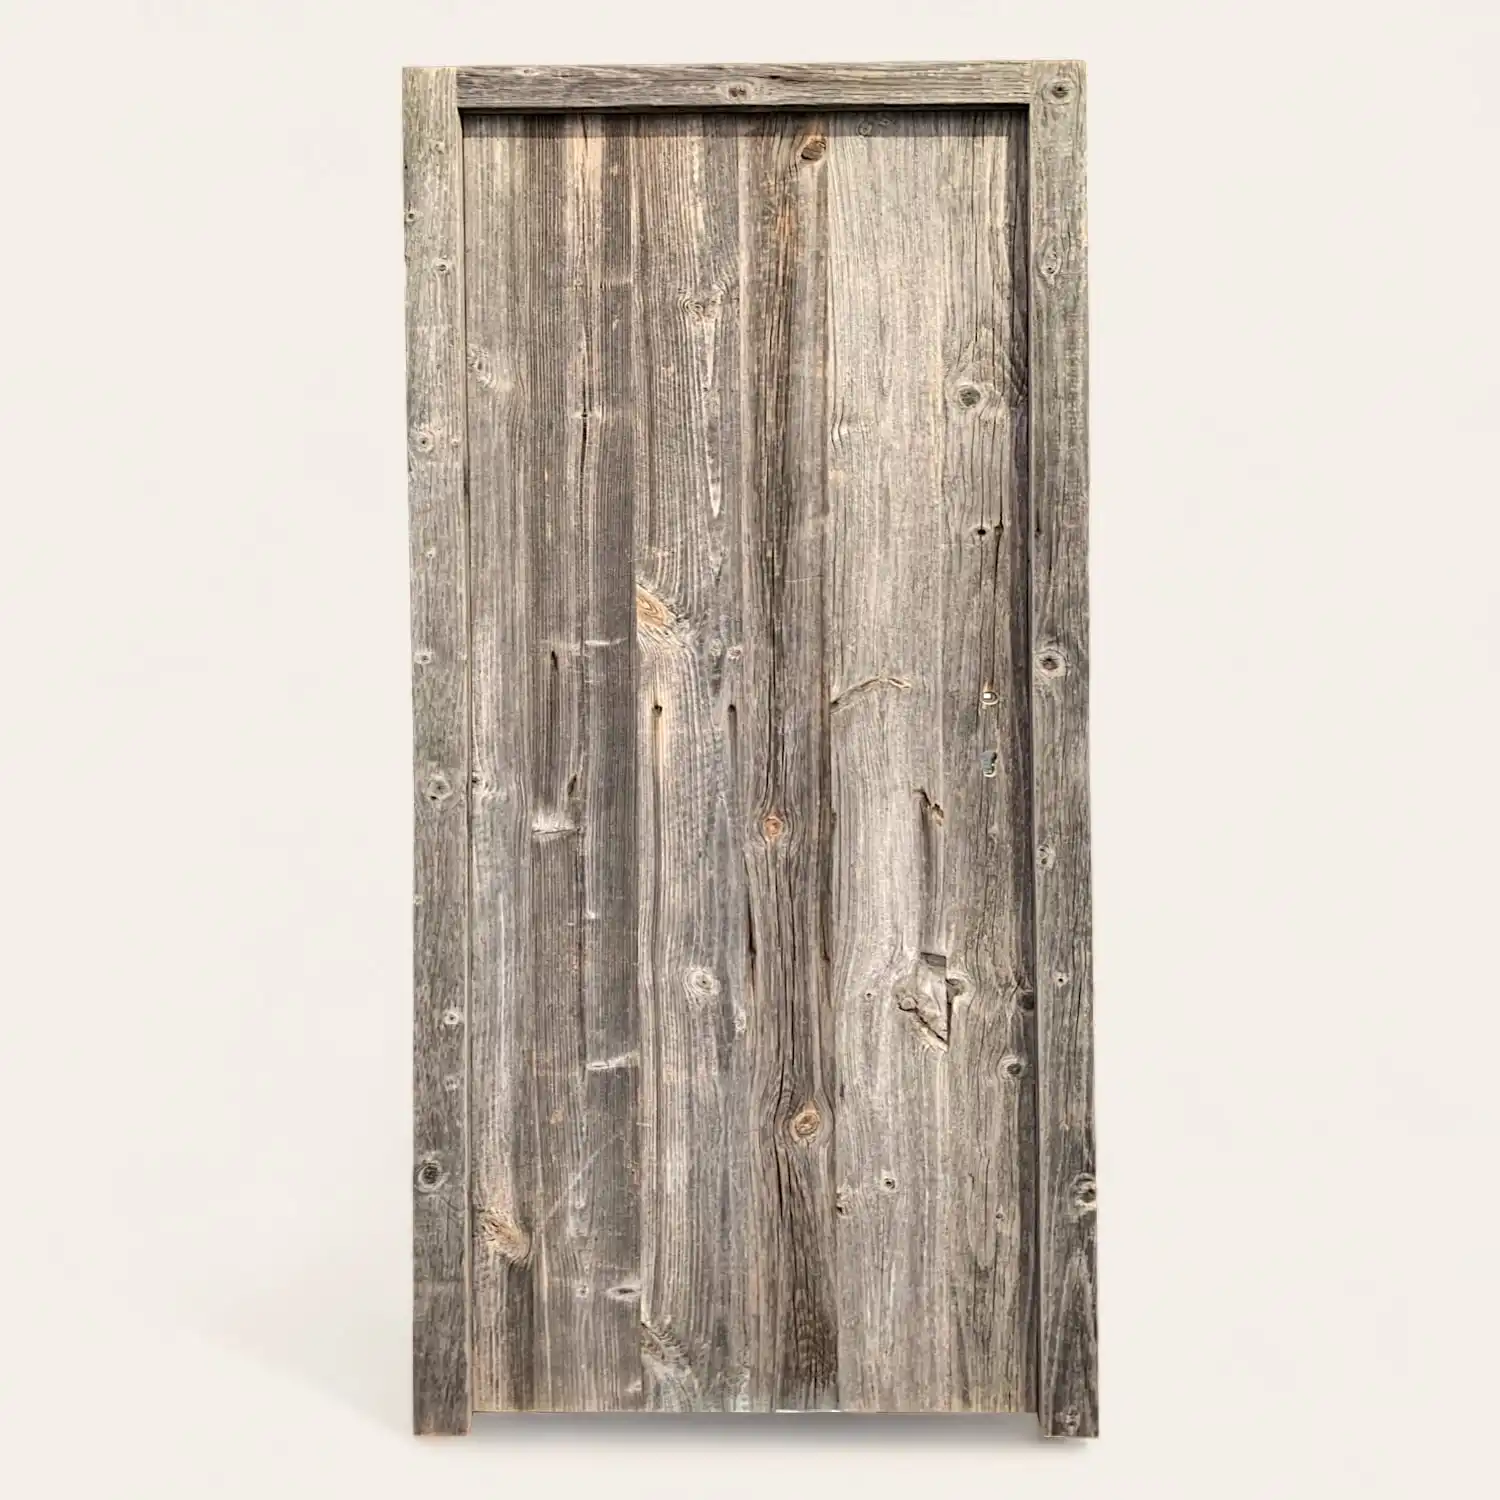  Une porte de grange en vieux bois est représentée sur un fond blanc. 